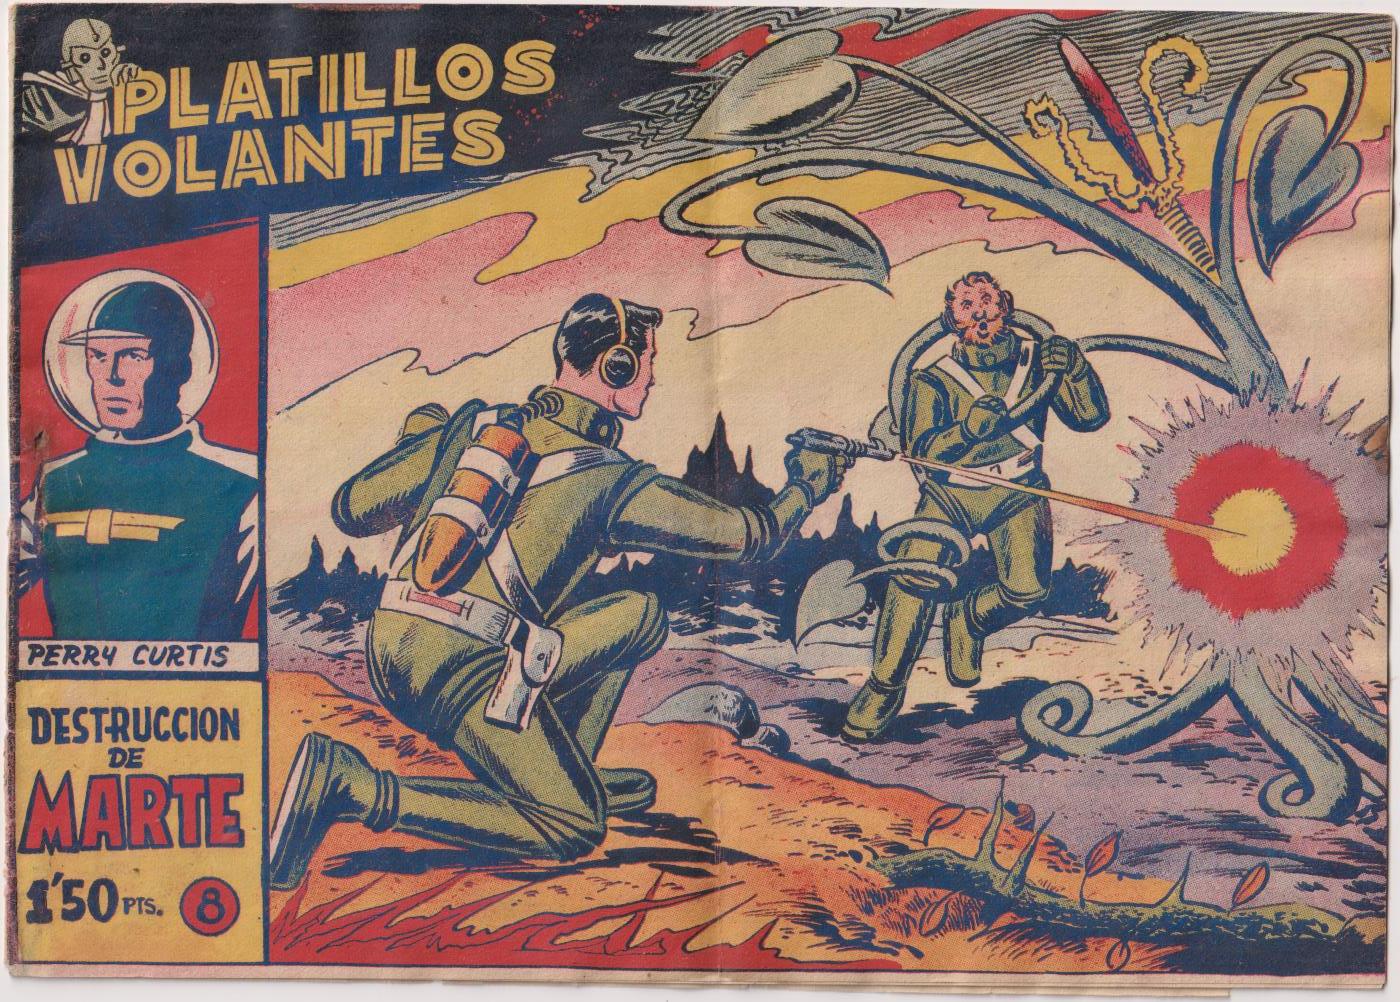 Platillos Volantes nº 8. Ricart 1955